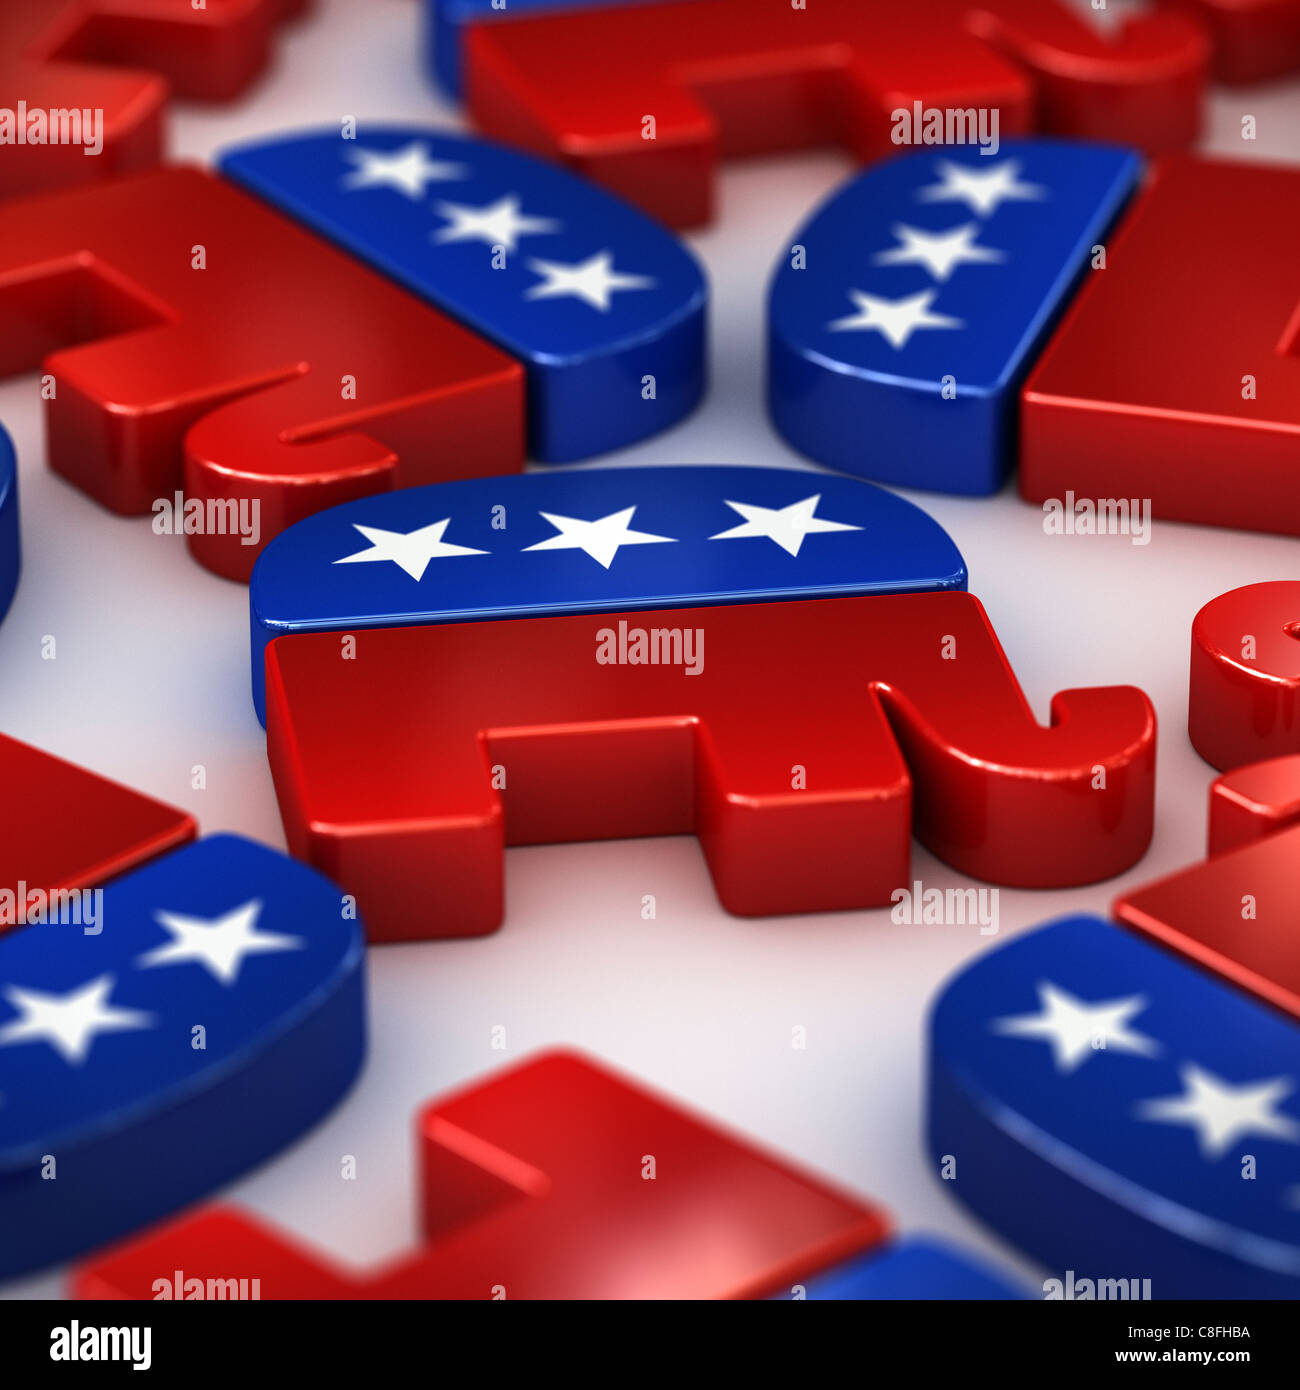 Republican party logos Stock Photo